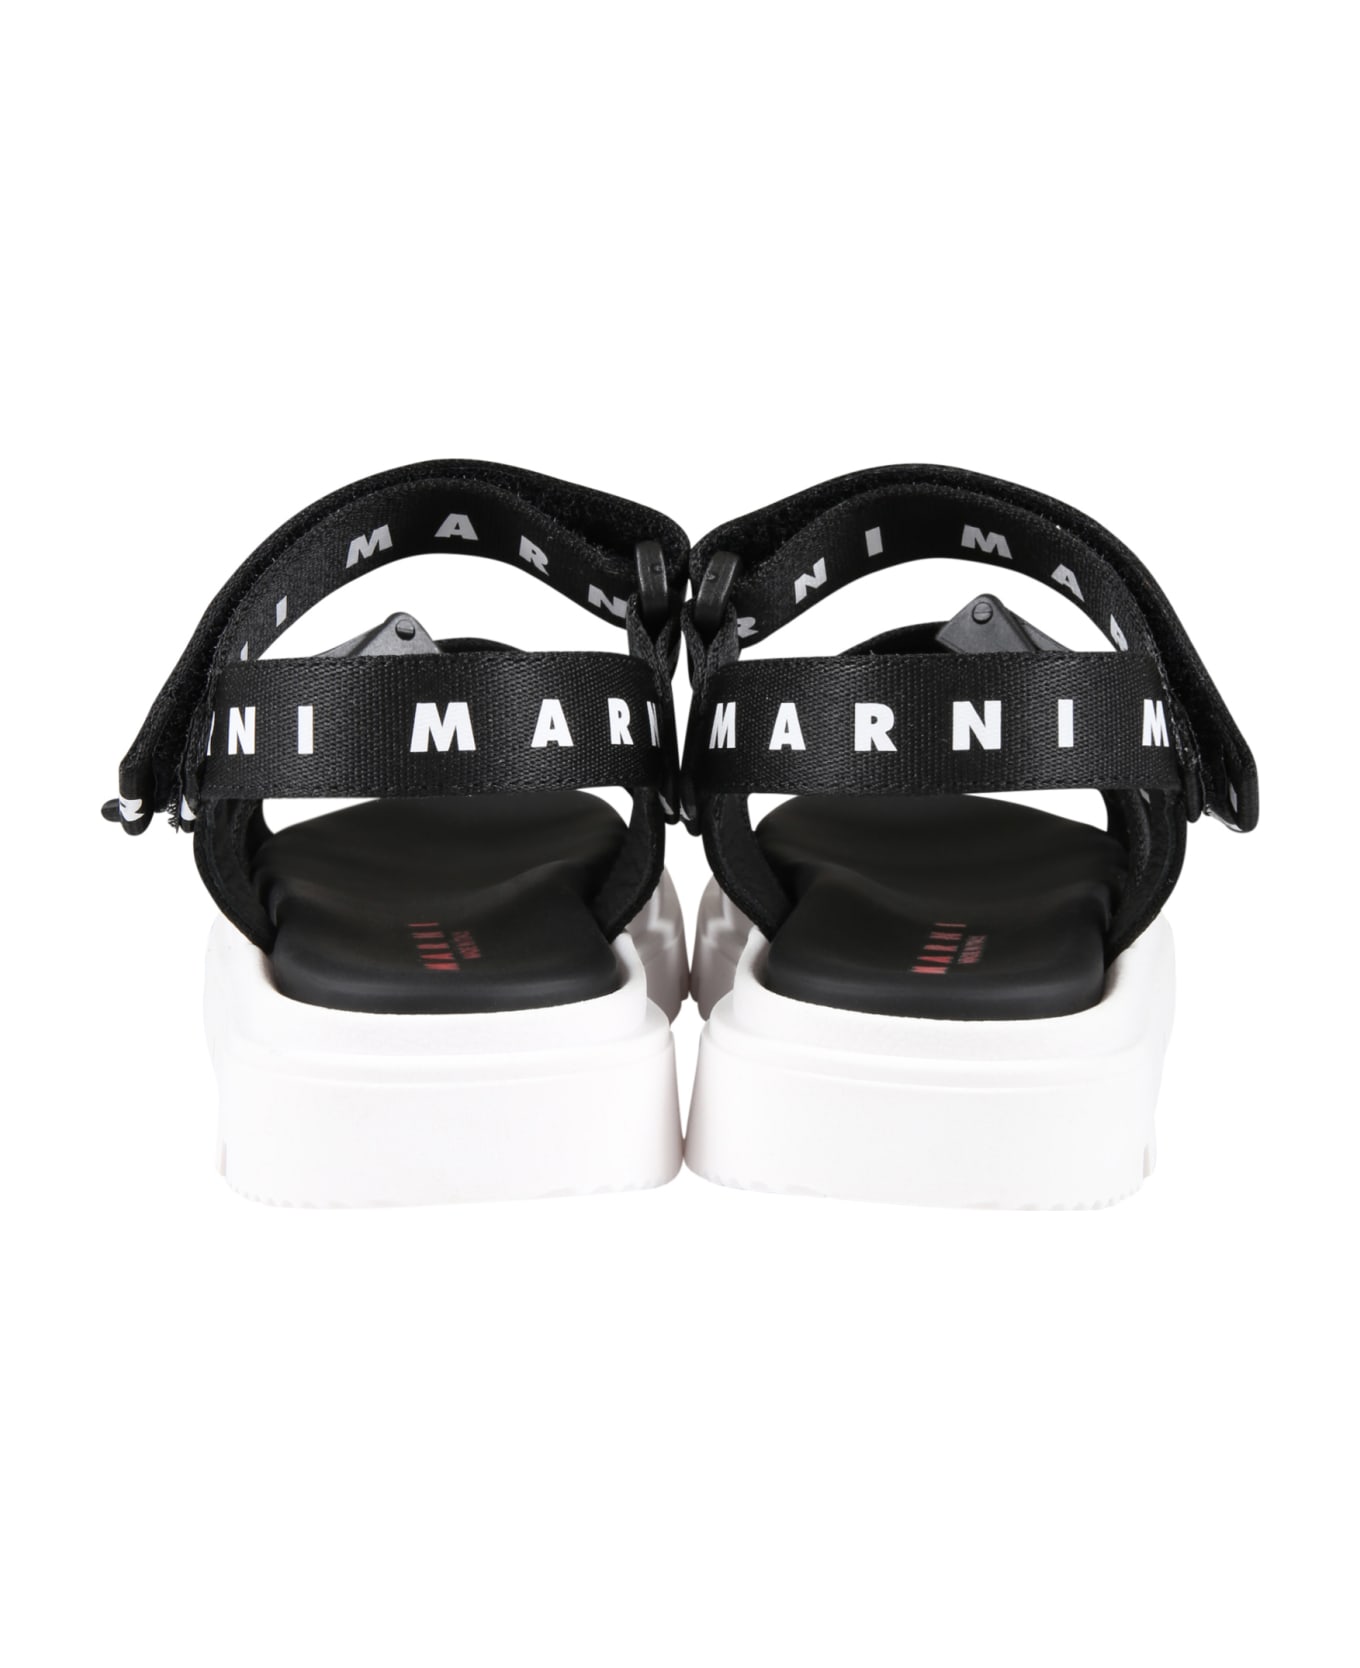 Marni Black Sandals For Girl With White Logo - Black